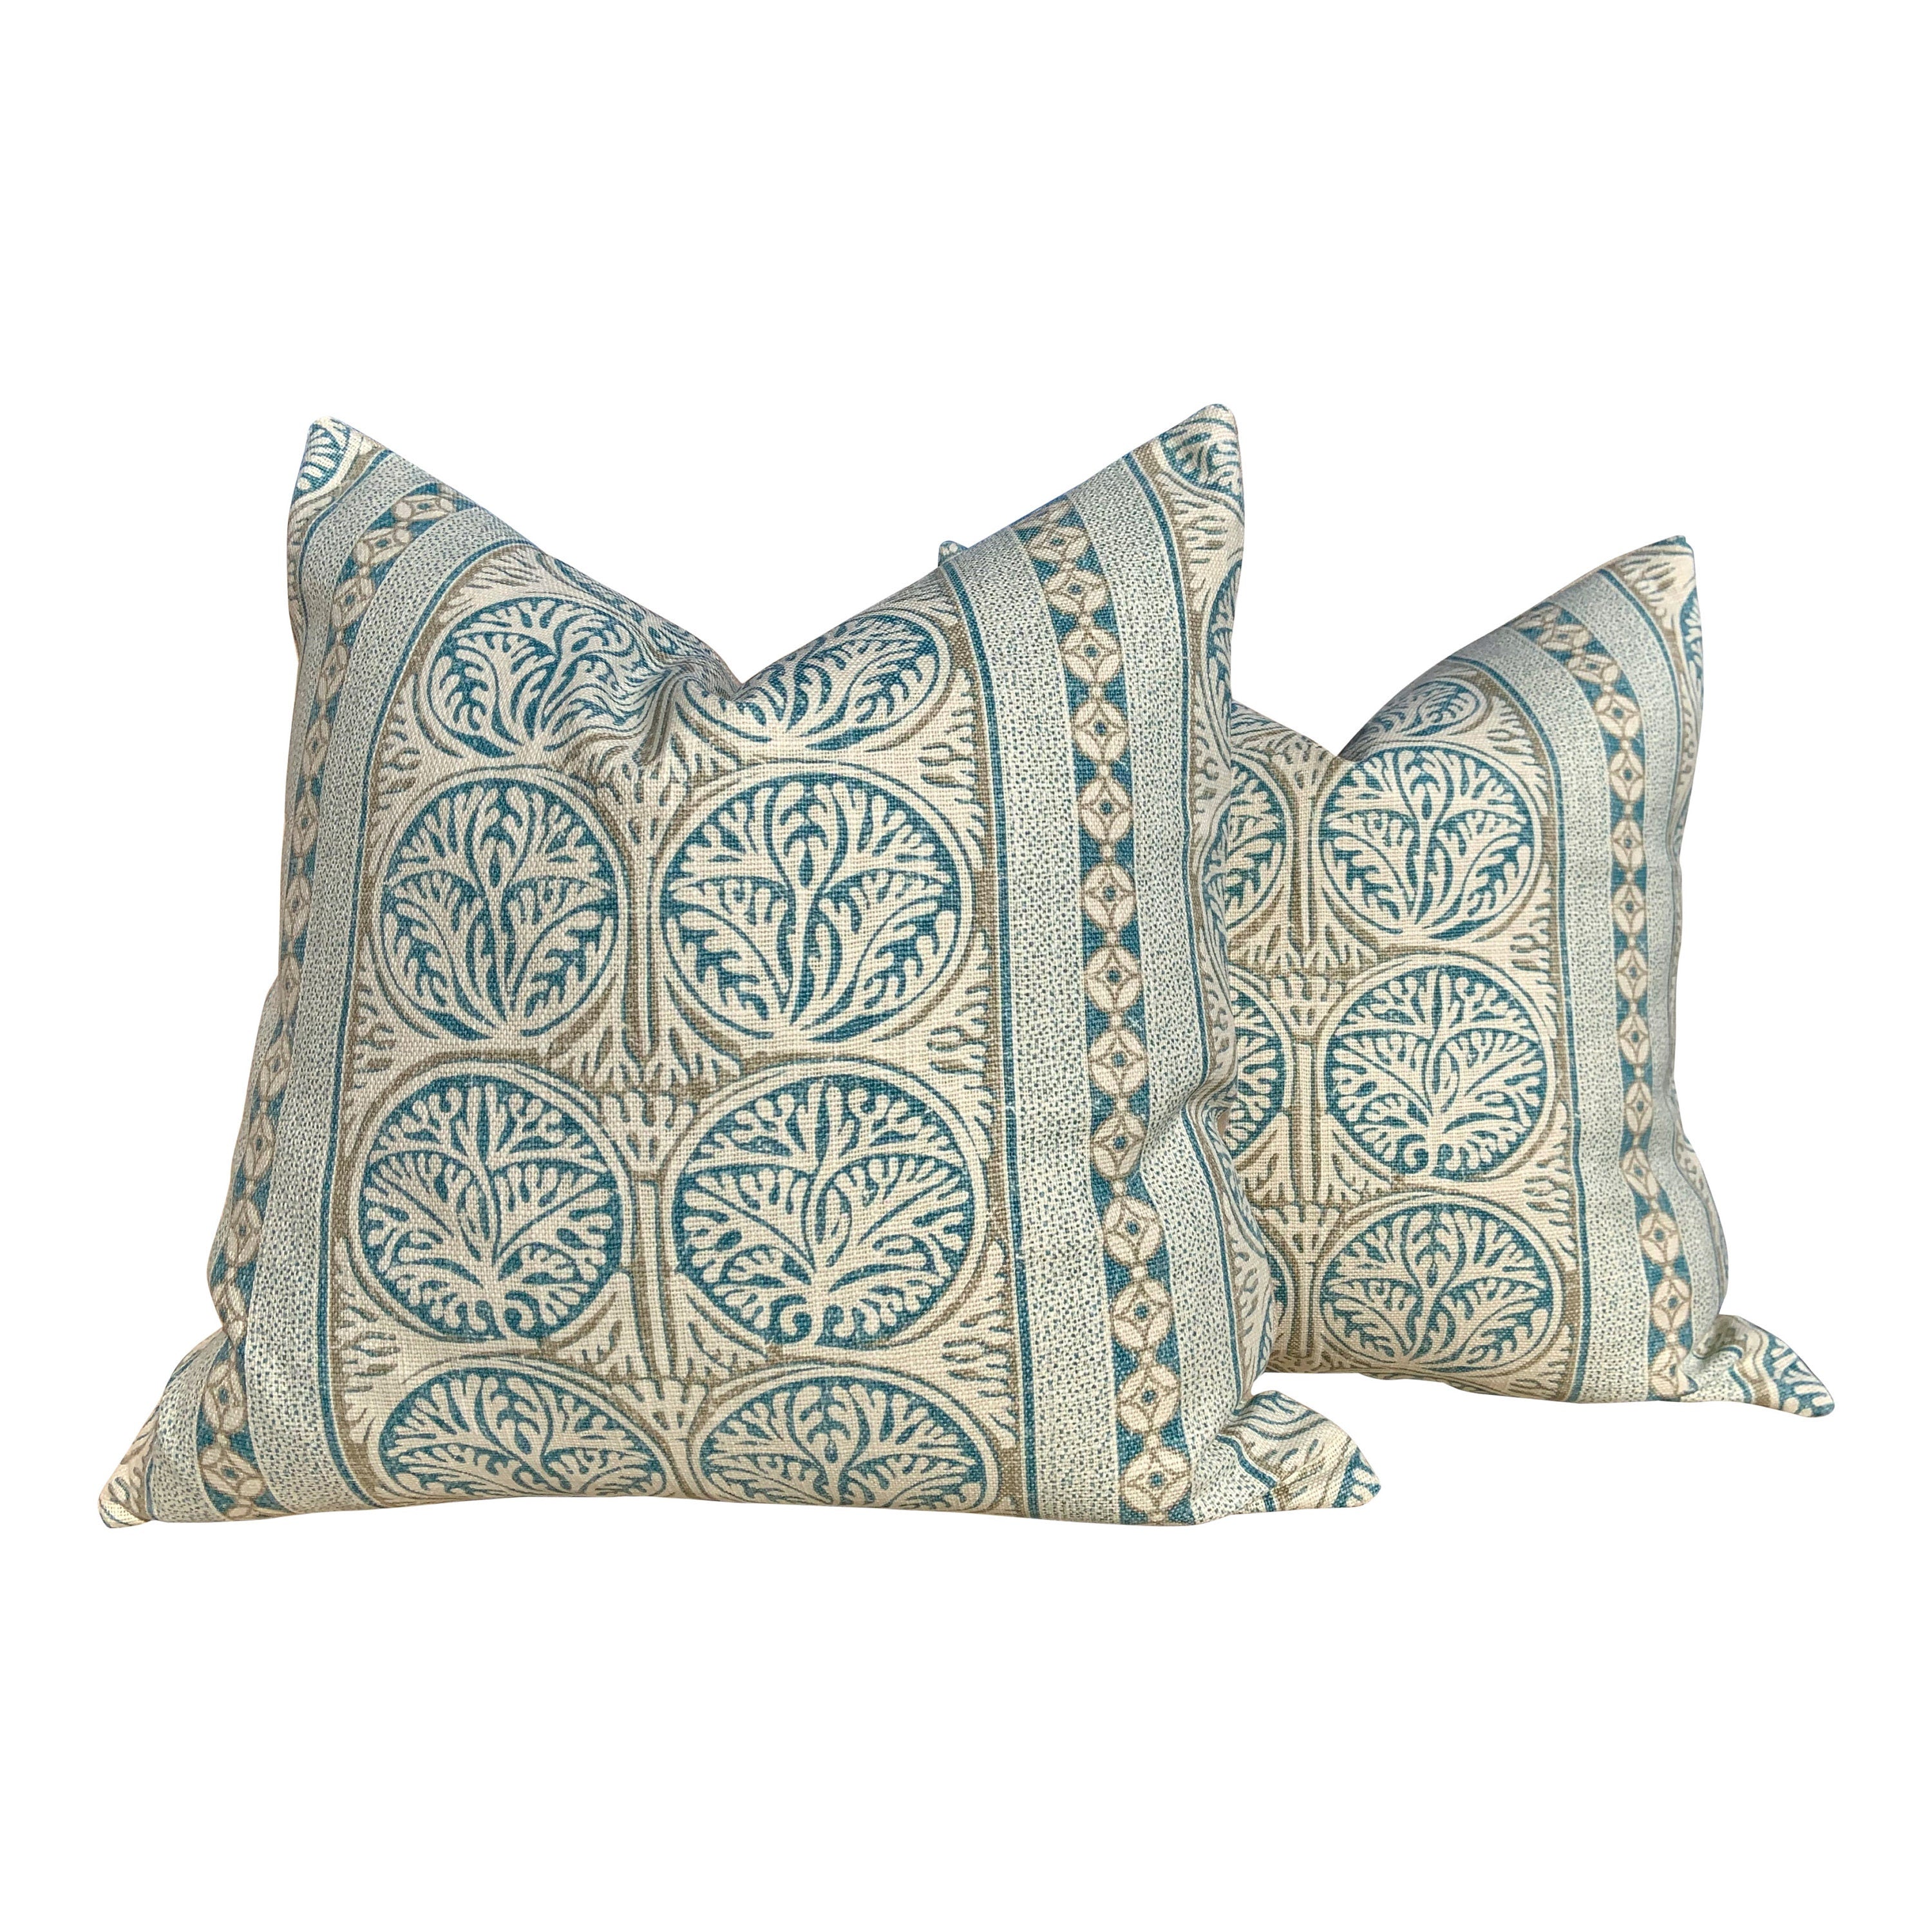 Thibaut Fair Isle Pillow in SPA Blue. Lumbar Striped  Pillow // Aqua Blue Pillow // Geometric Pillow